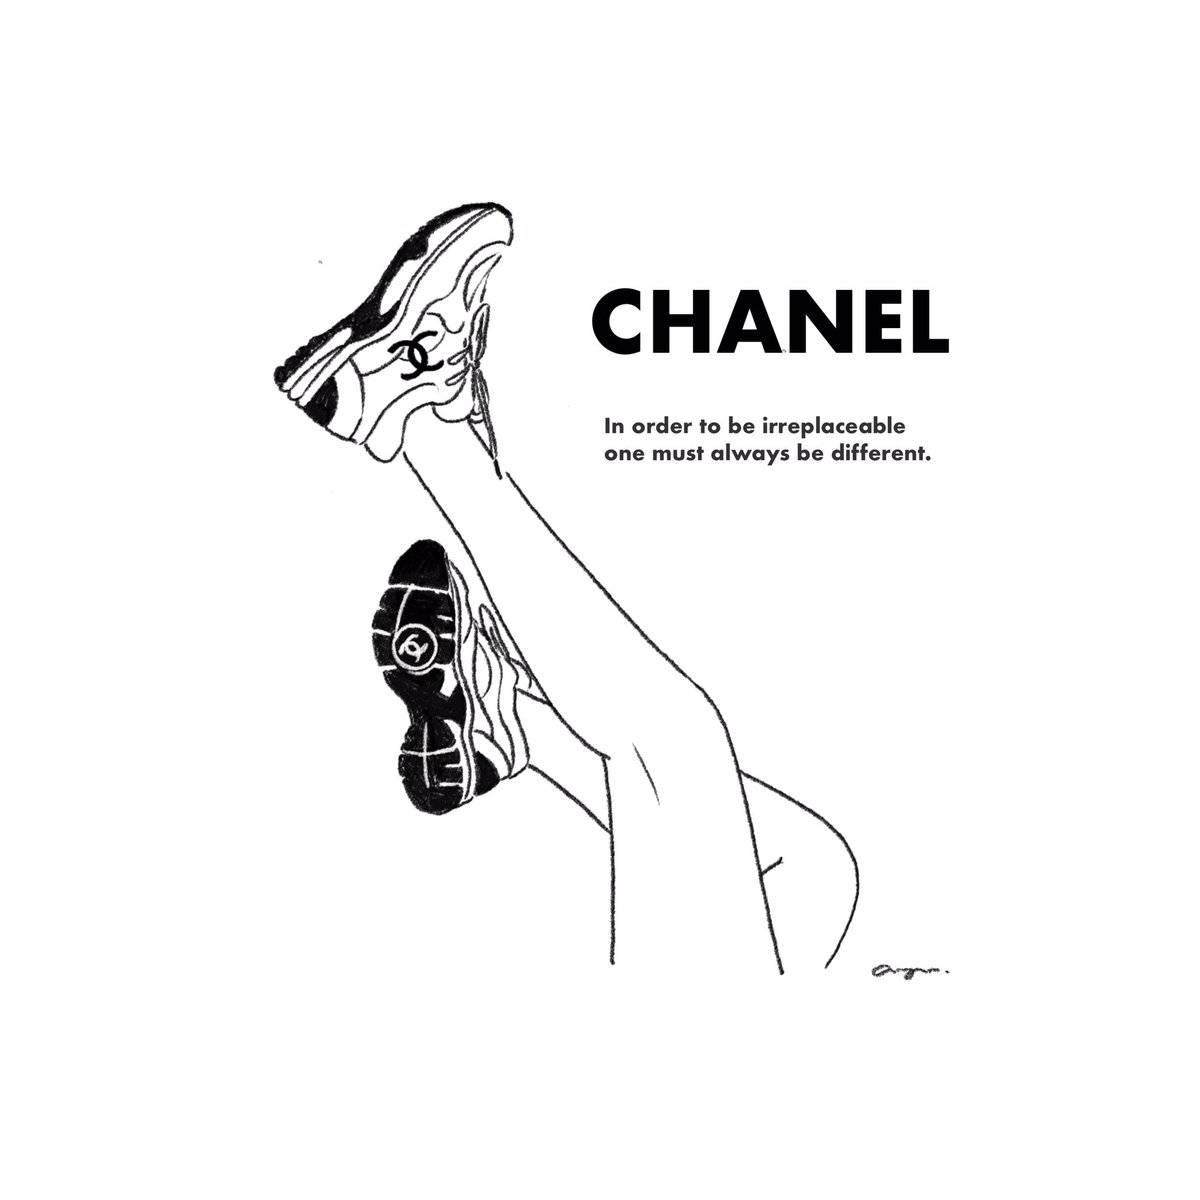 Ayumi イラスト いつかおシャネル様の靴を買えるような人になりたいです このイラストお気に入り シャネル Chanel イラスト 線画 ファッションイラスト